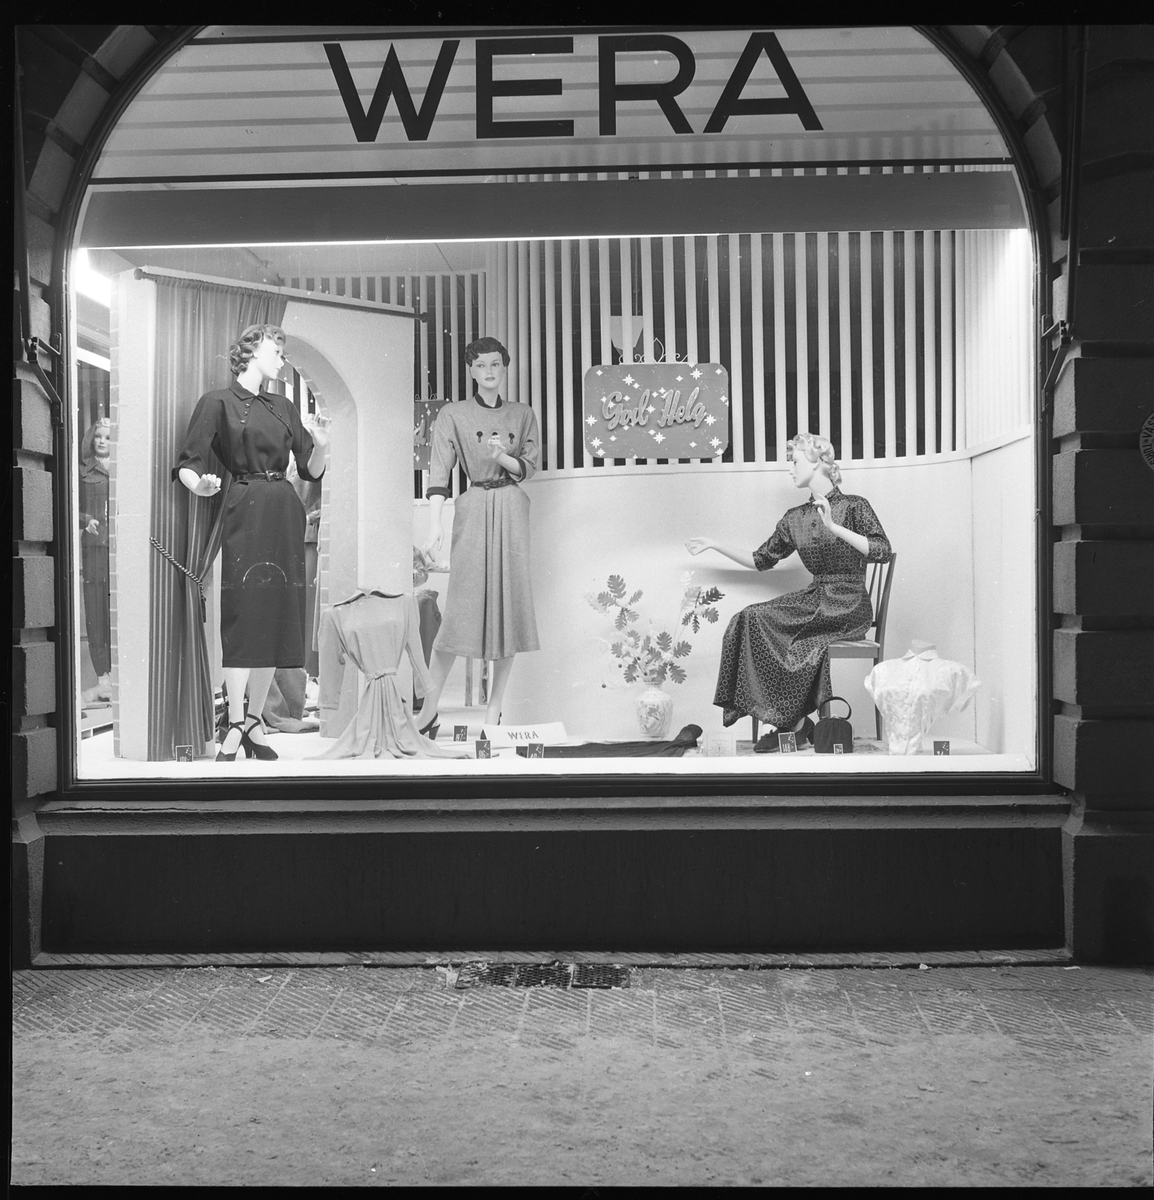 Wera-magasinets skyltfönster på Nygatan 18, kv Hjorten, 29 dec 1950